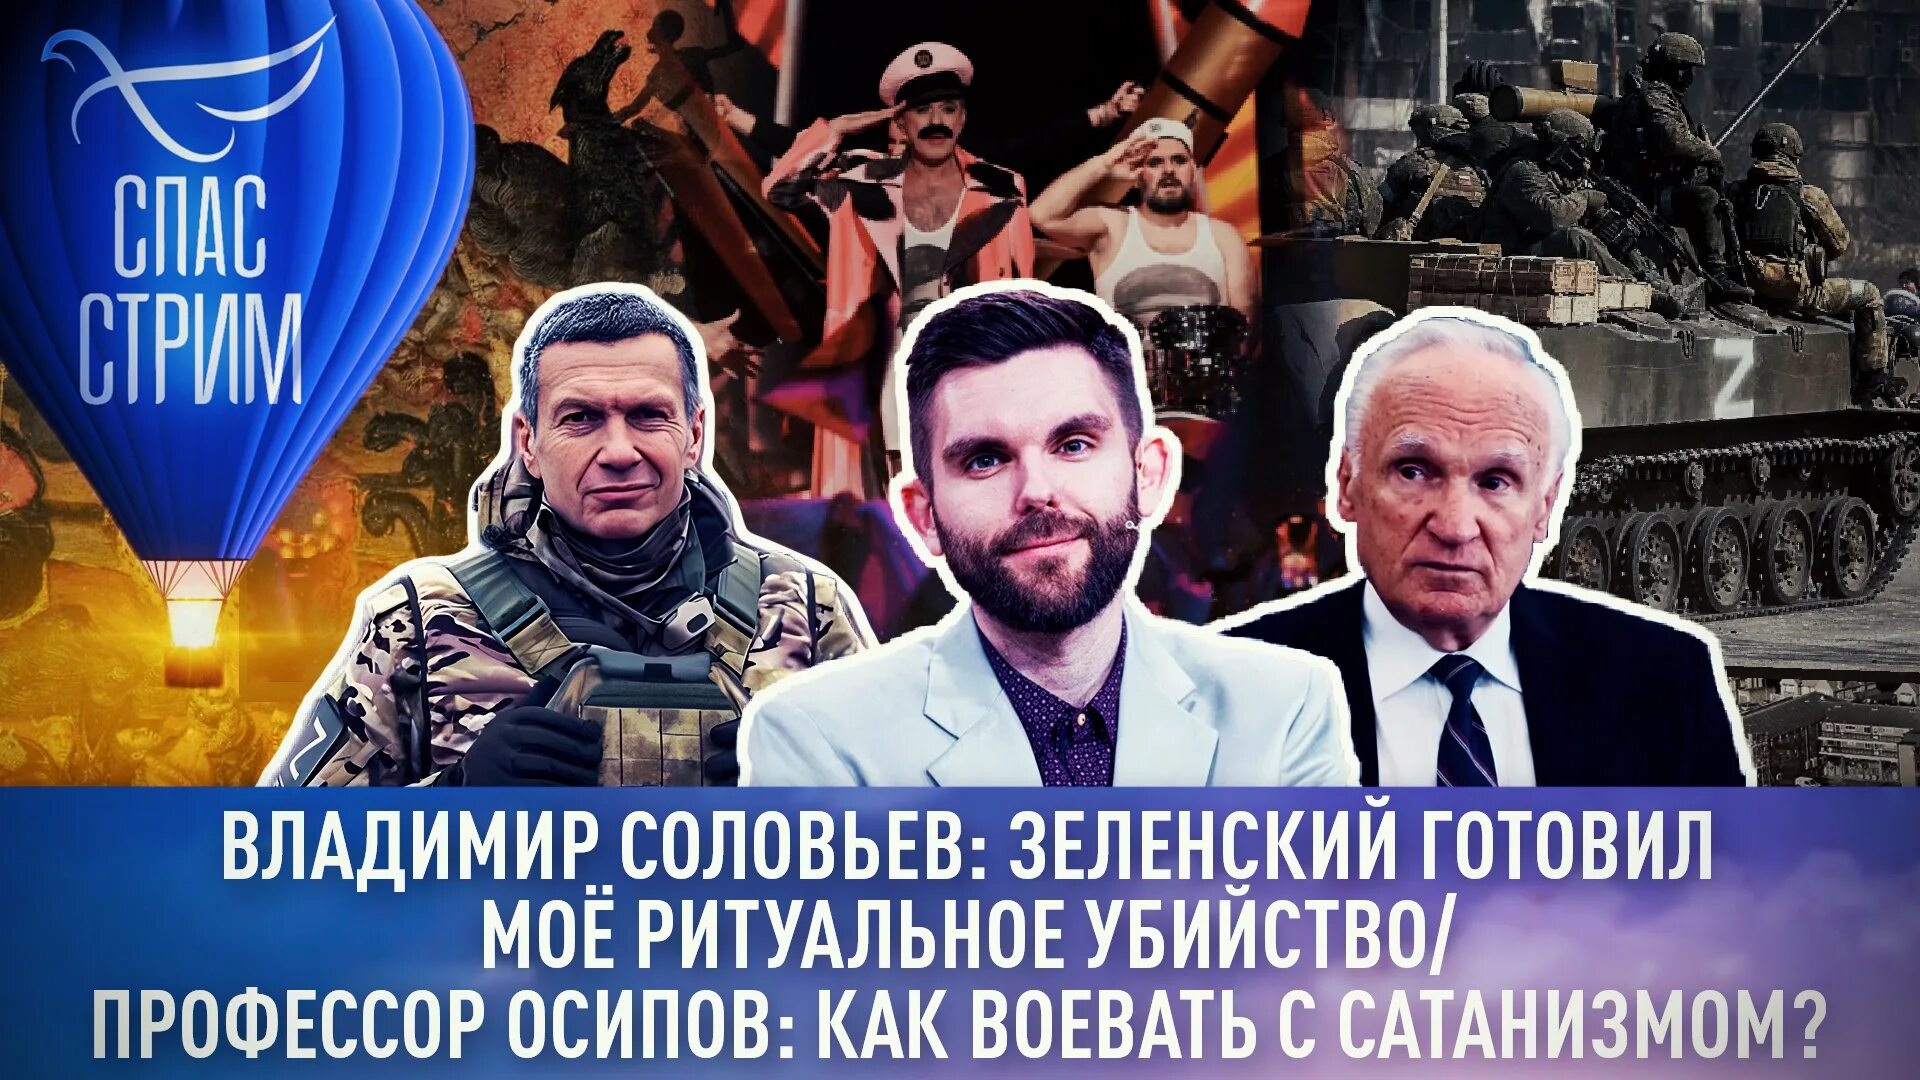 Спас стрим последний выпуск. Украинцы уничтожают Православие. Корреспонденты 1 канала в Луганске. Соловьев вот вам.